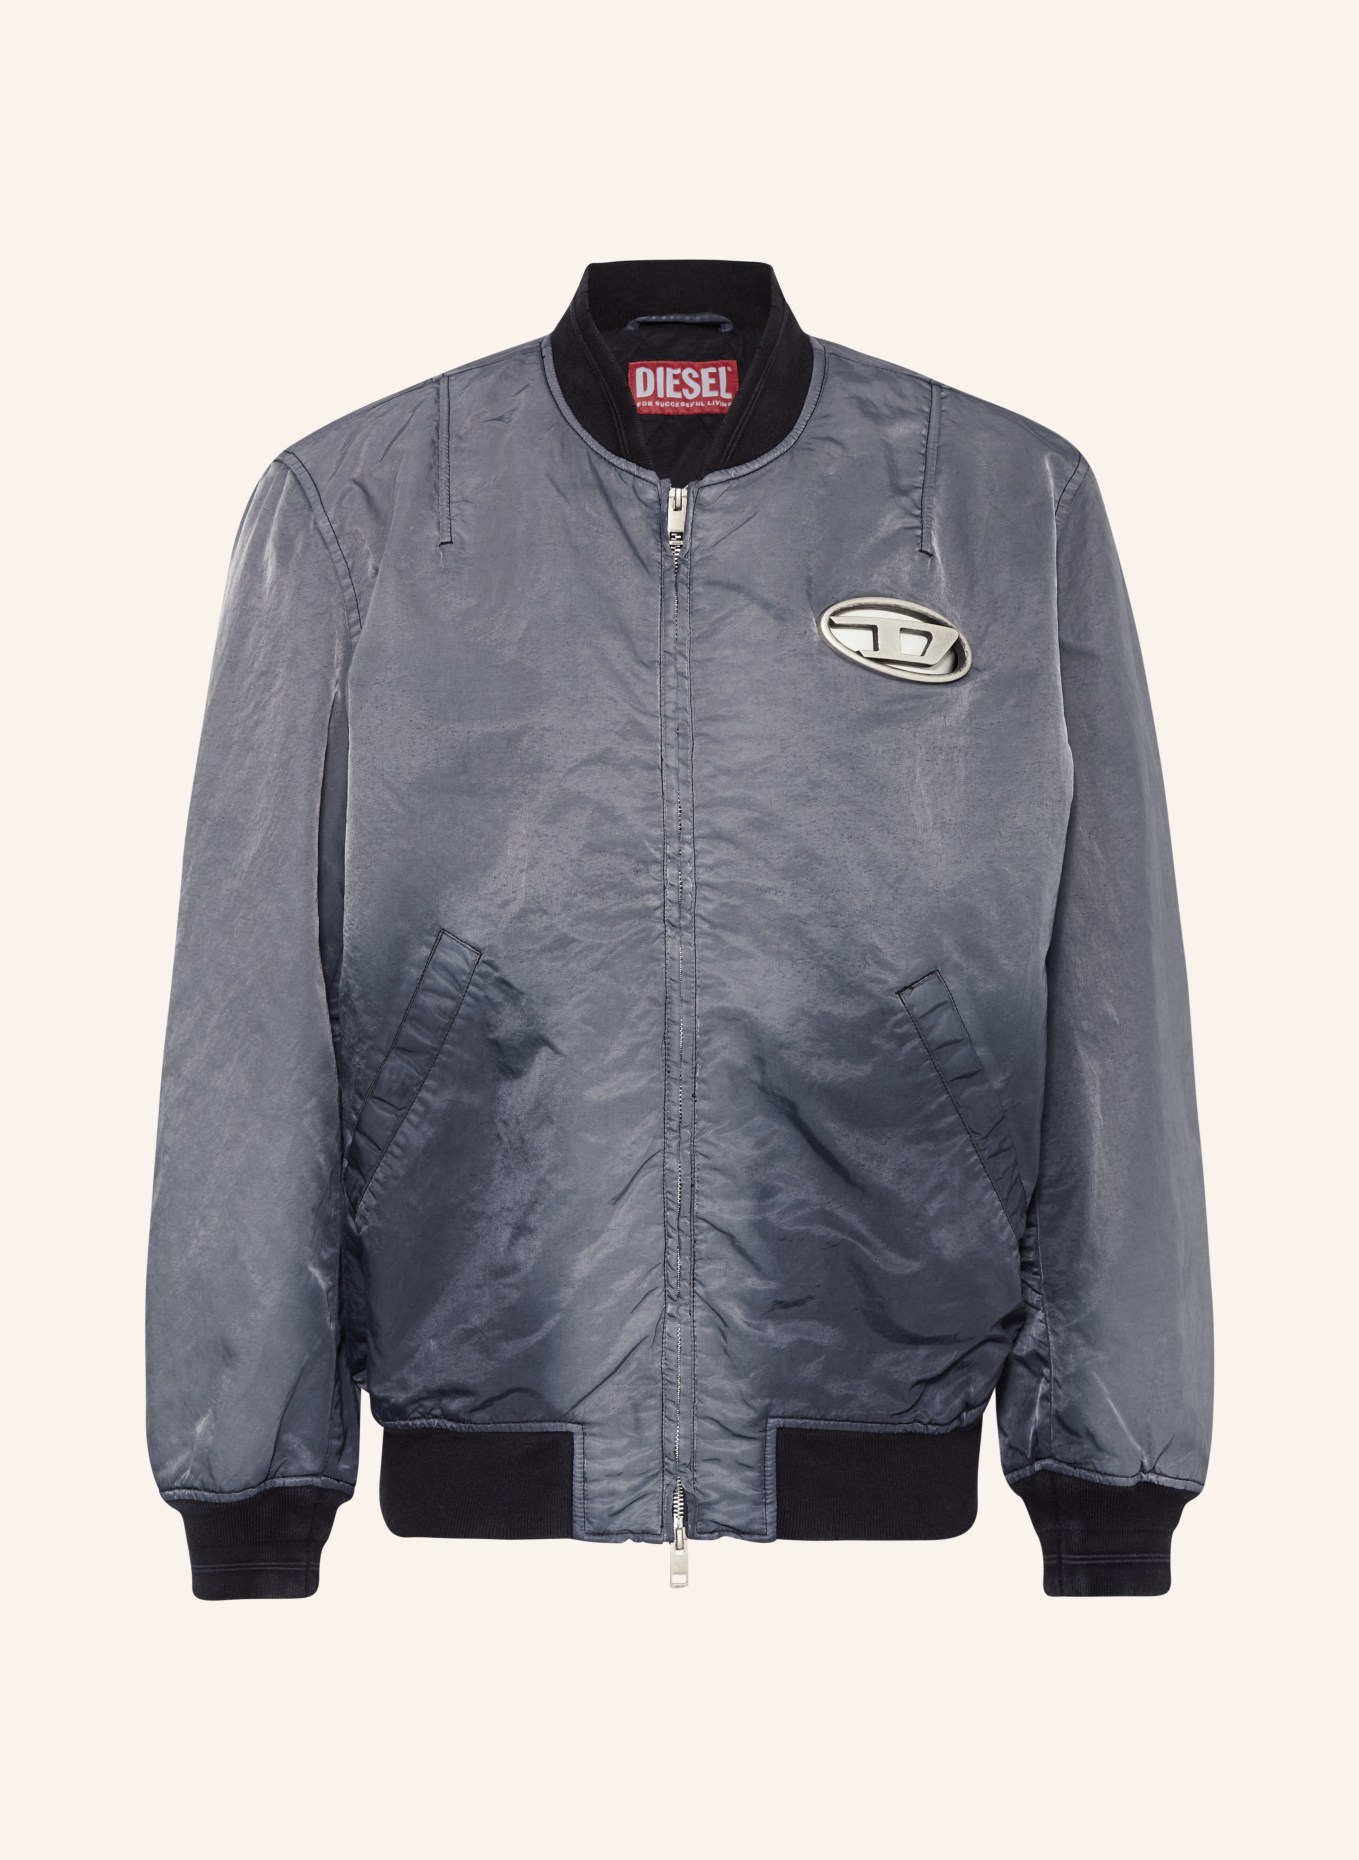 DIESEL Bomber jacket KEPES, Color: BLACK/ GRAY (Image 1)